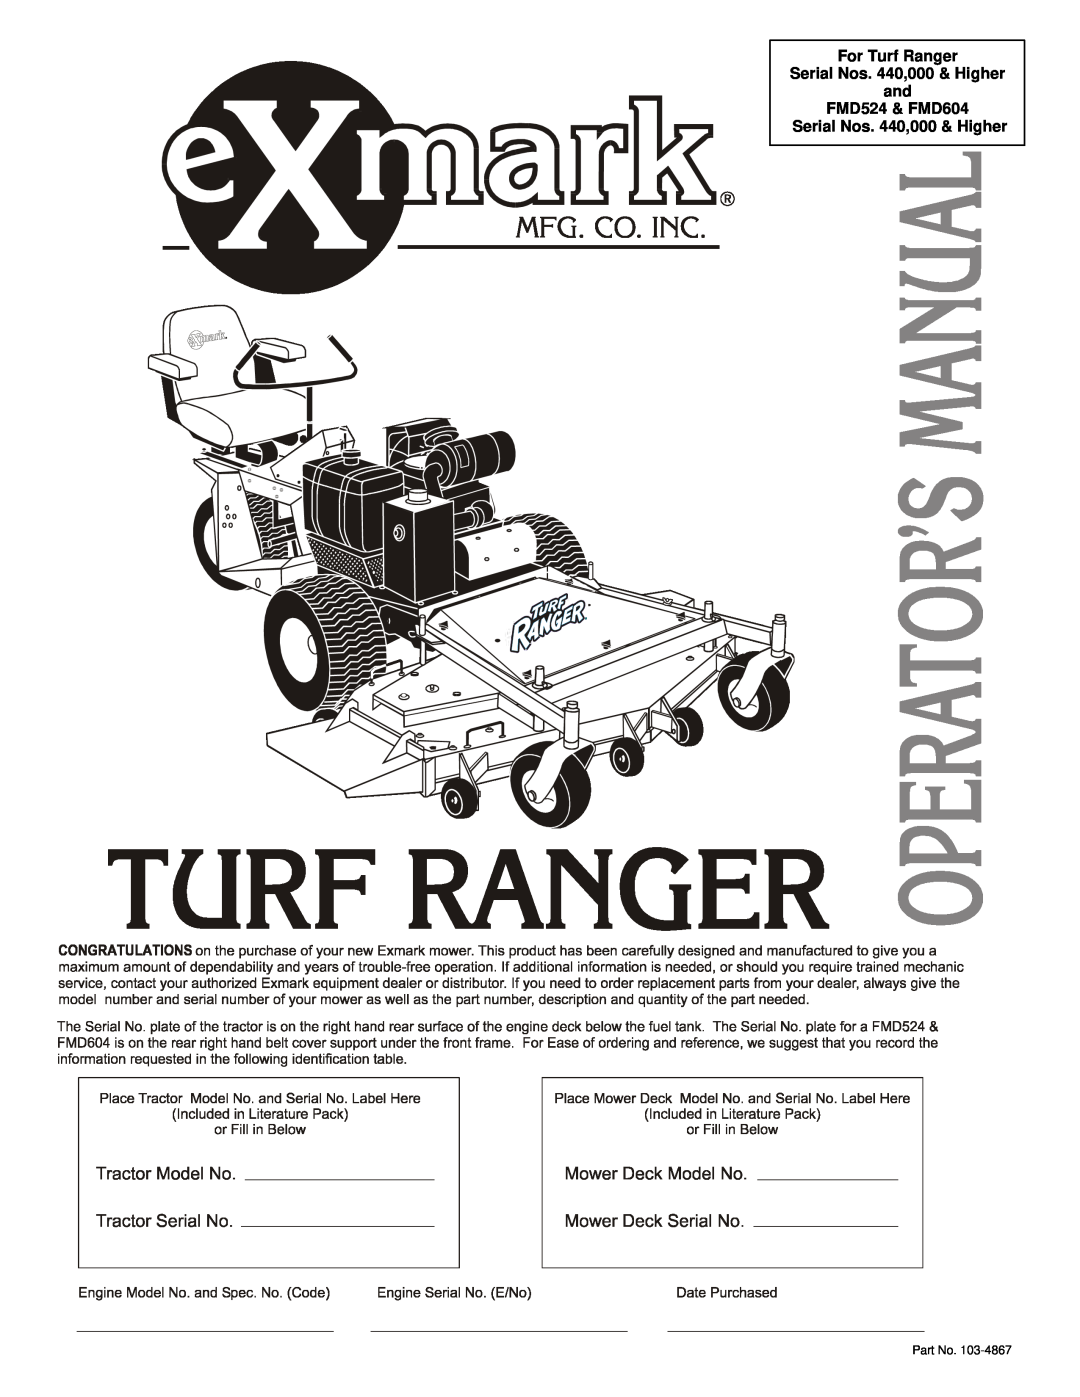 Exmark FMD 604, FMD 524 manual For Turf Ranger Serial Nos. 440,000 & Higher and FMD524 & FMD604 